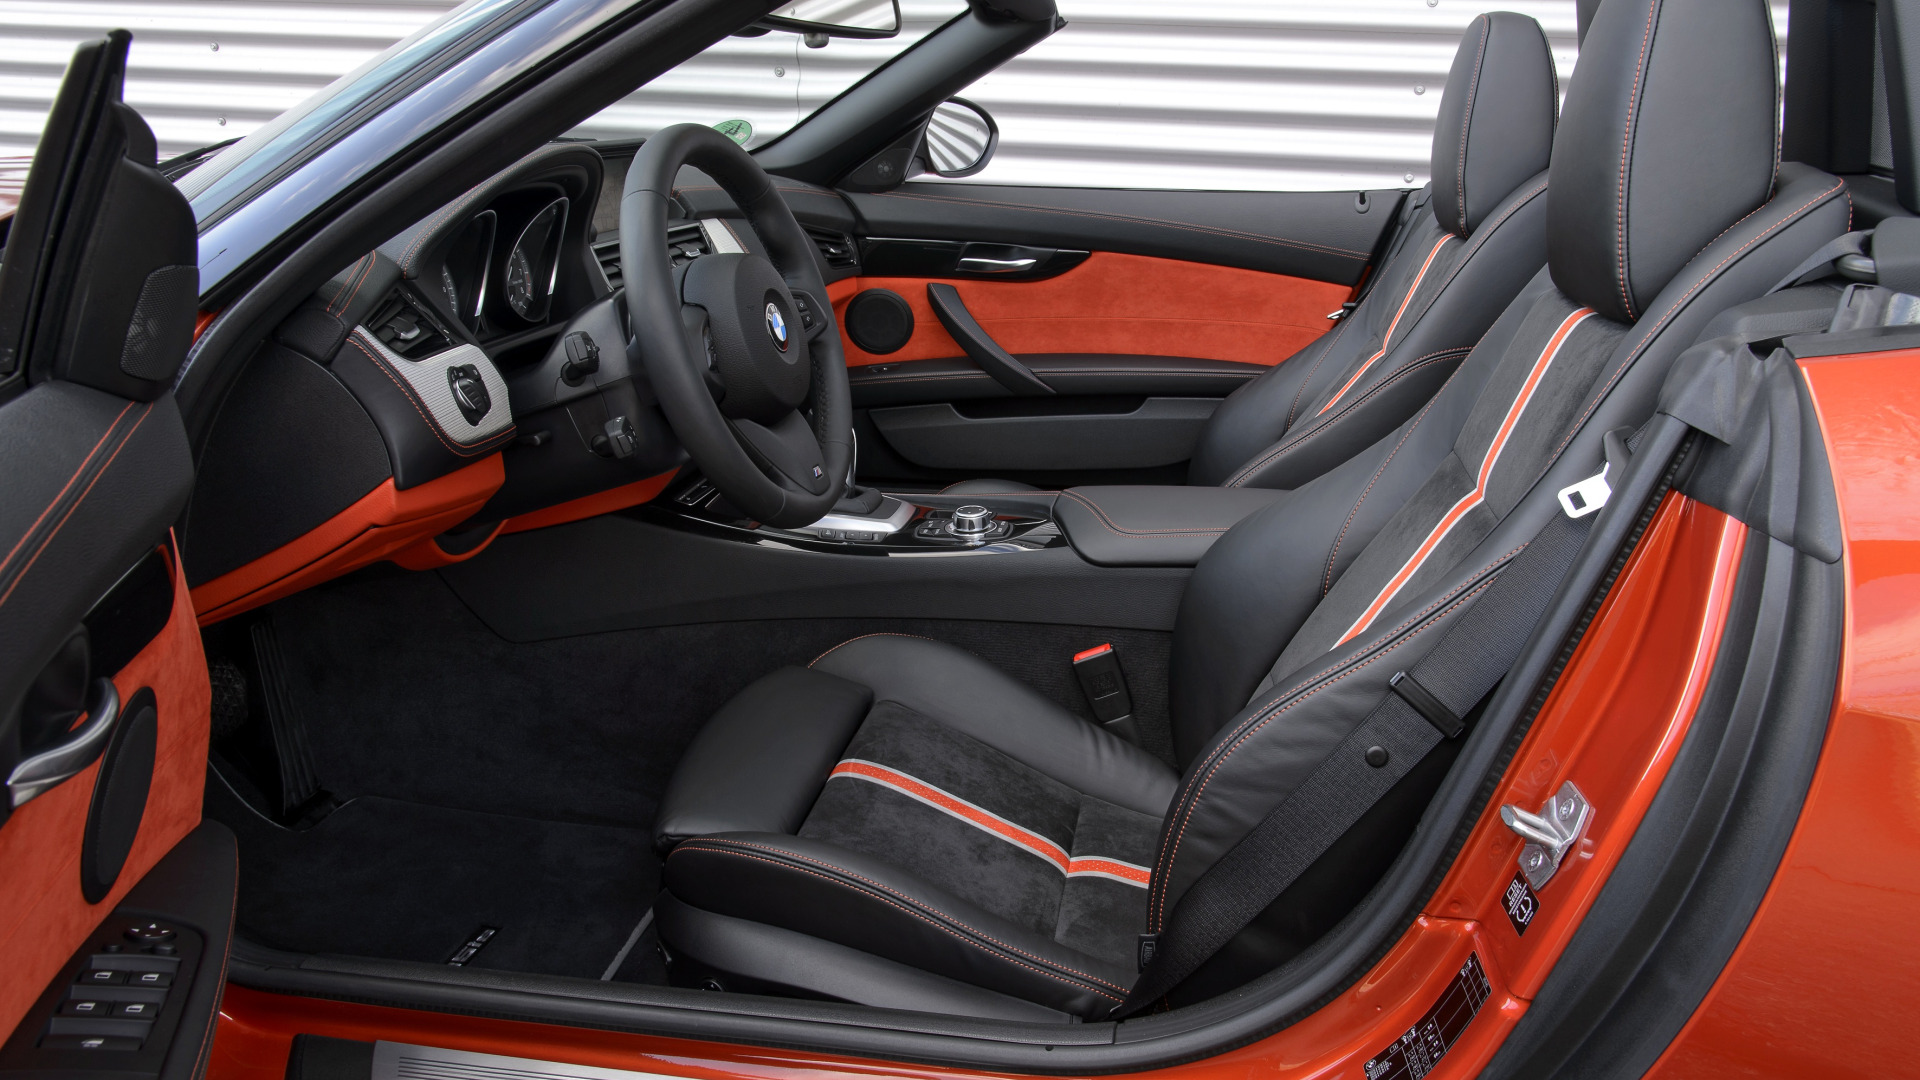 Hình ảnh nội thất xe BMW Z4 sang trọng 18